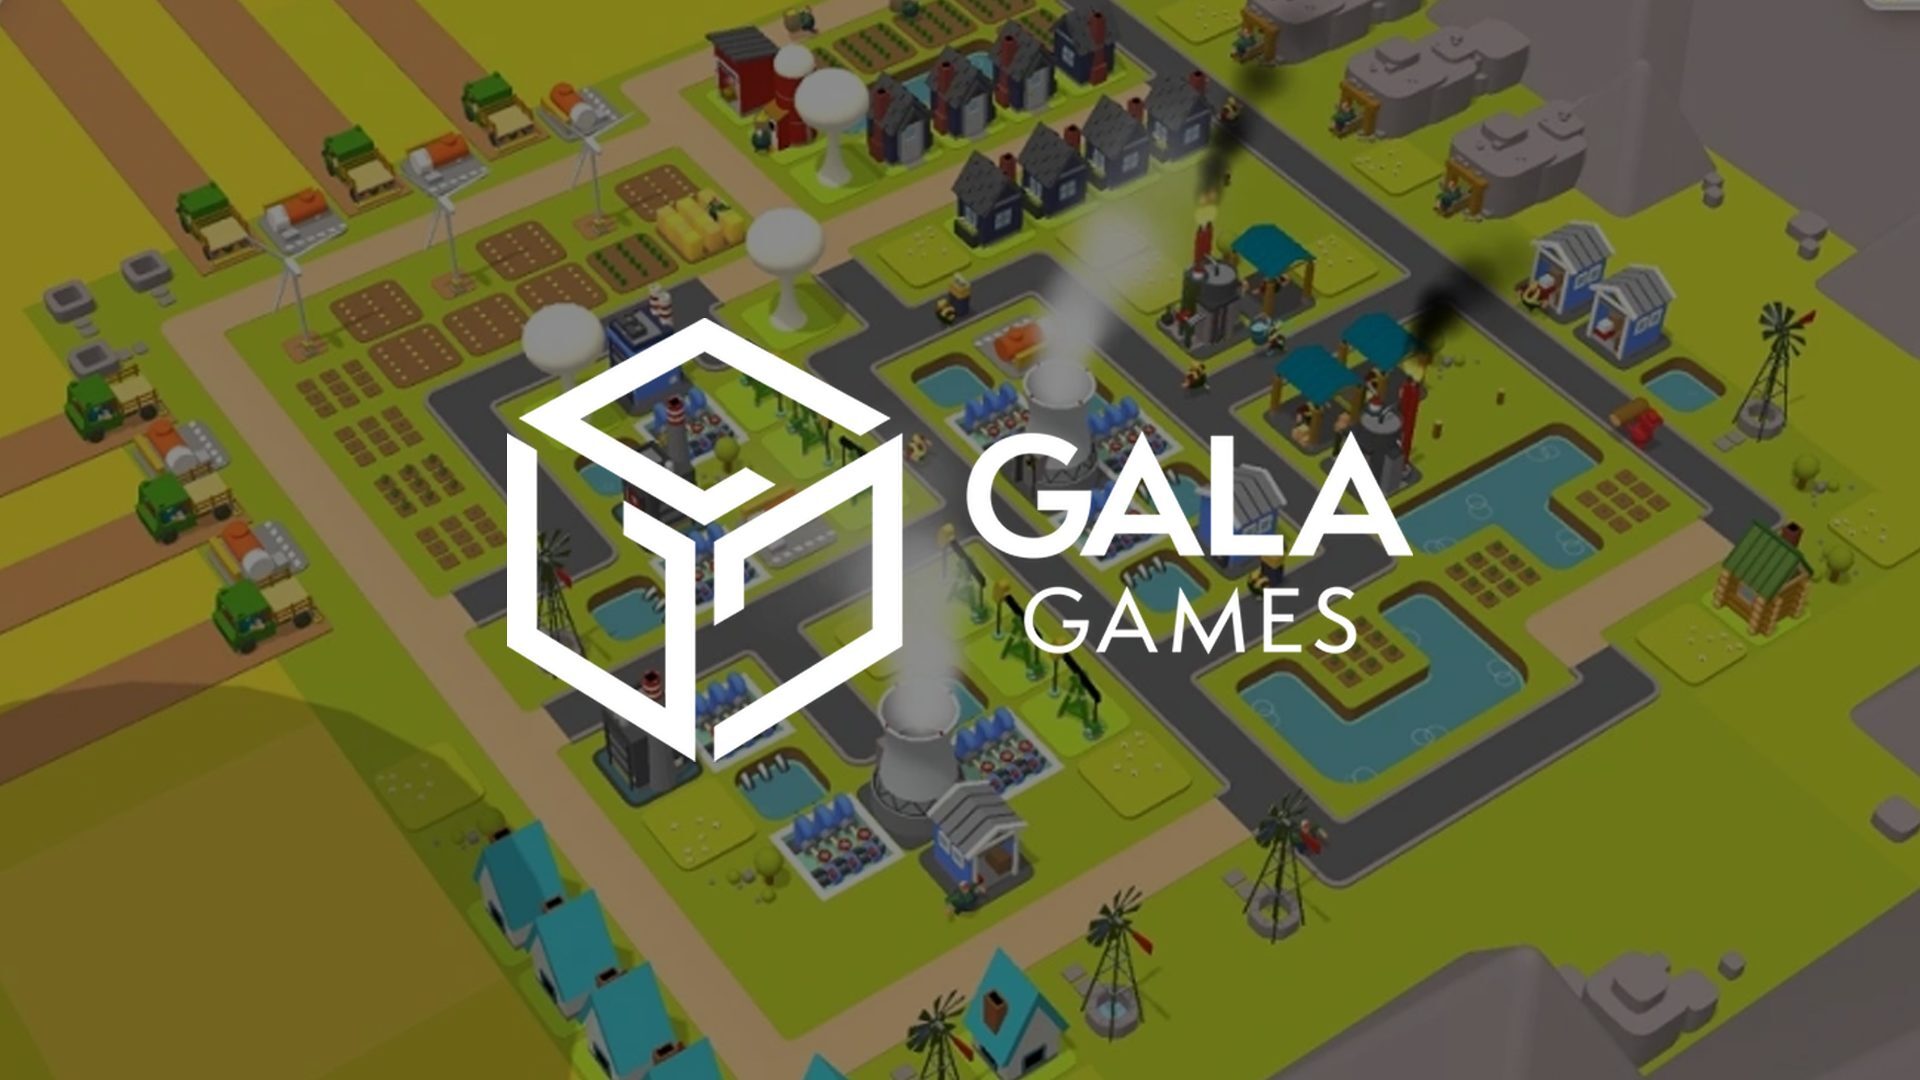 Gala Games lập quỹ 100 triệu USD đầu tư vào blockchain game